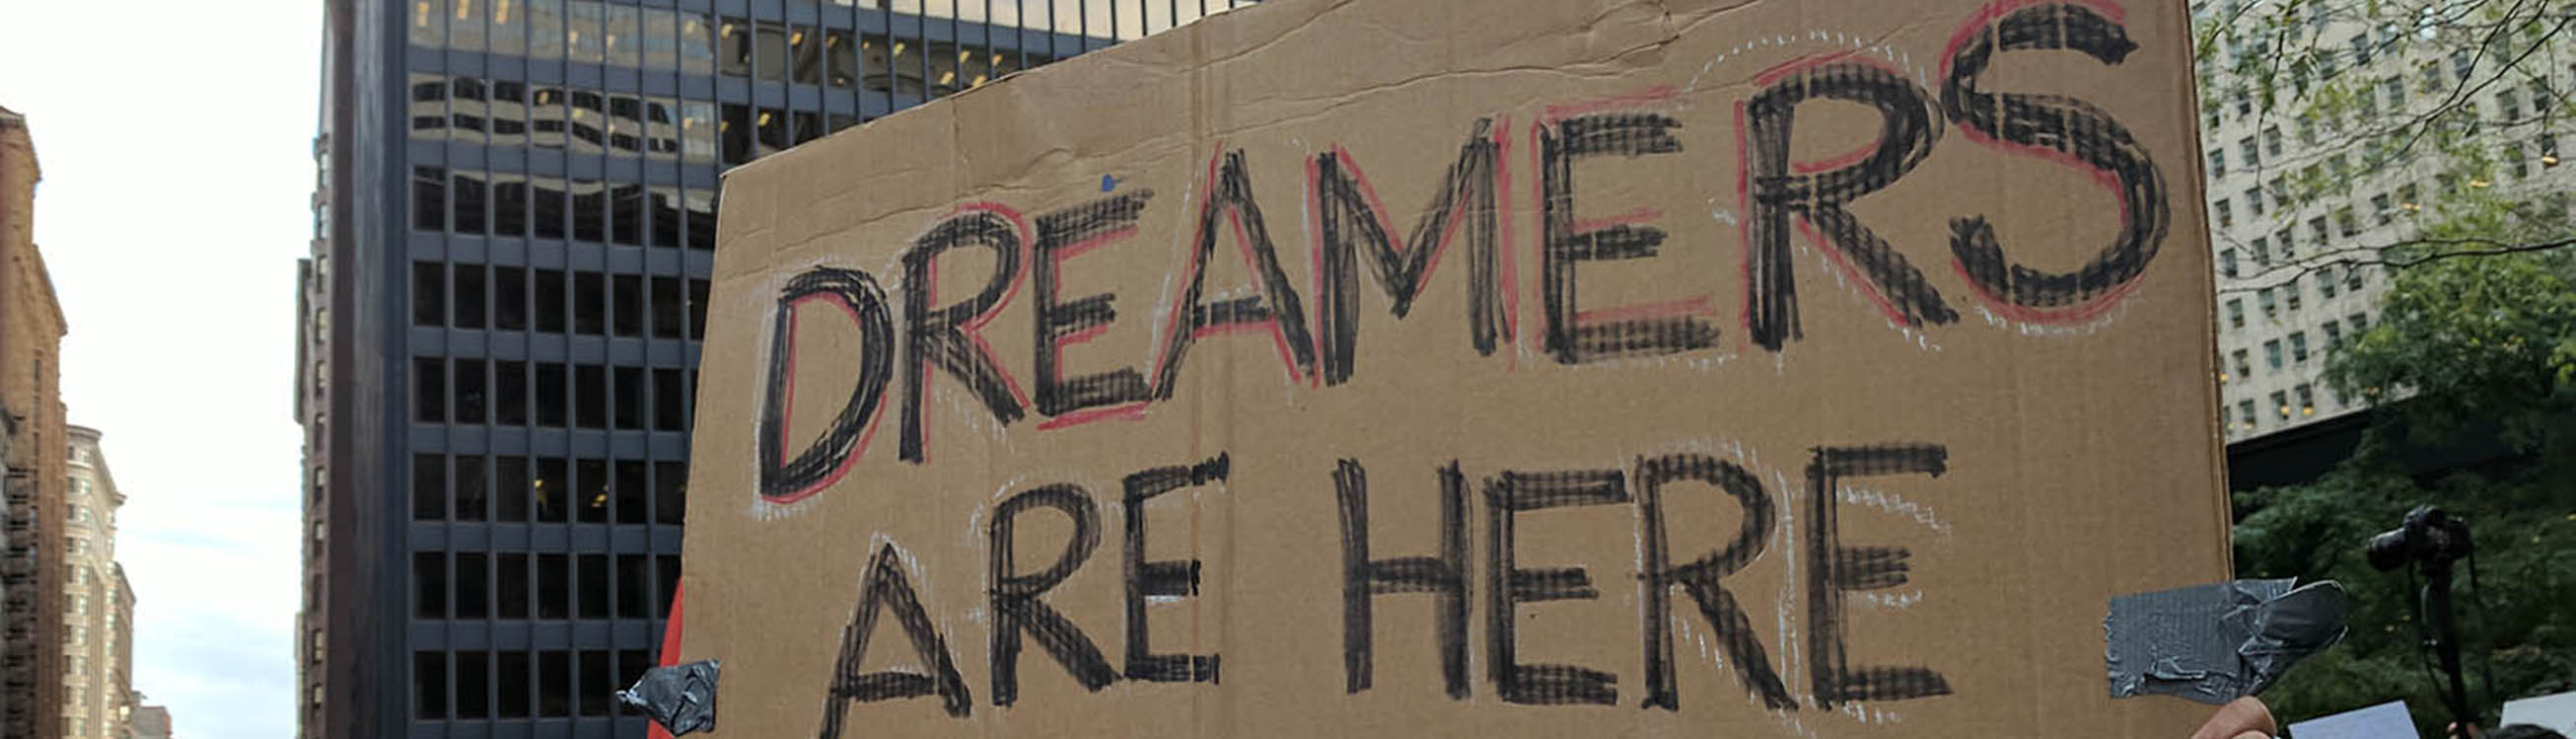 Mano con un cartel de protesta que dice "Los soñadores están aquí para quedarse" con los edificios de la ciudad al fondo